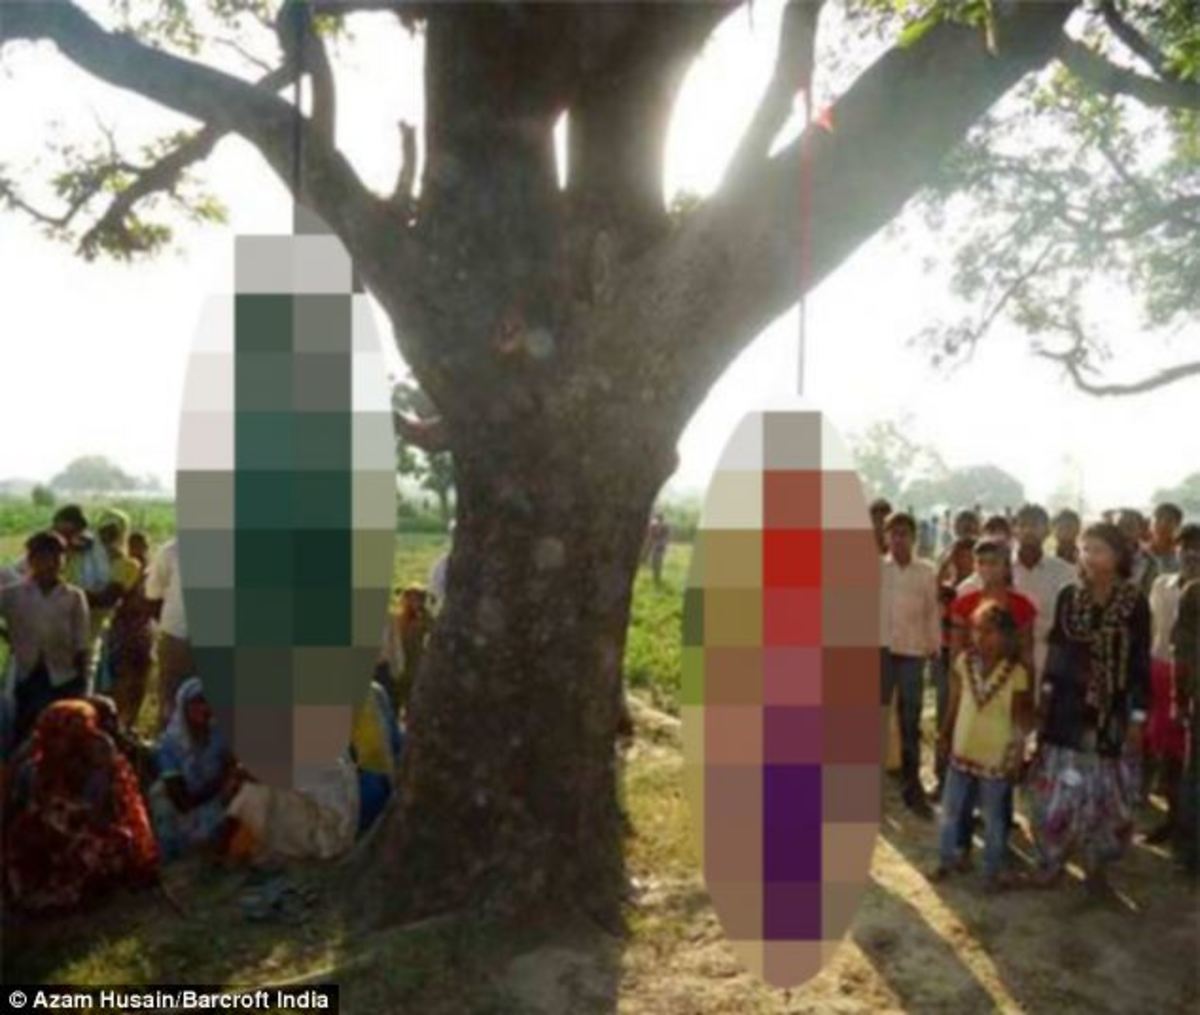 Ινδία: Σοκάρουν οι εικόνες των κοριτσιών που κρεμάστηκαν μετά το βιασμό τους